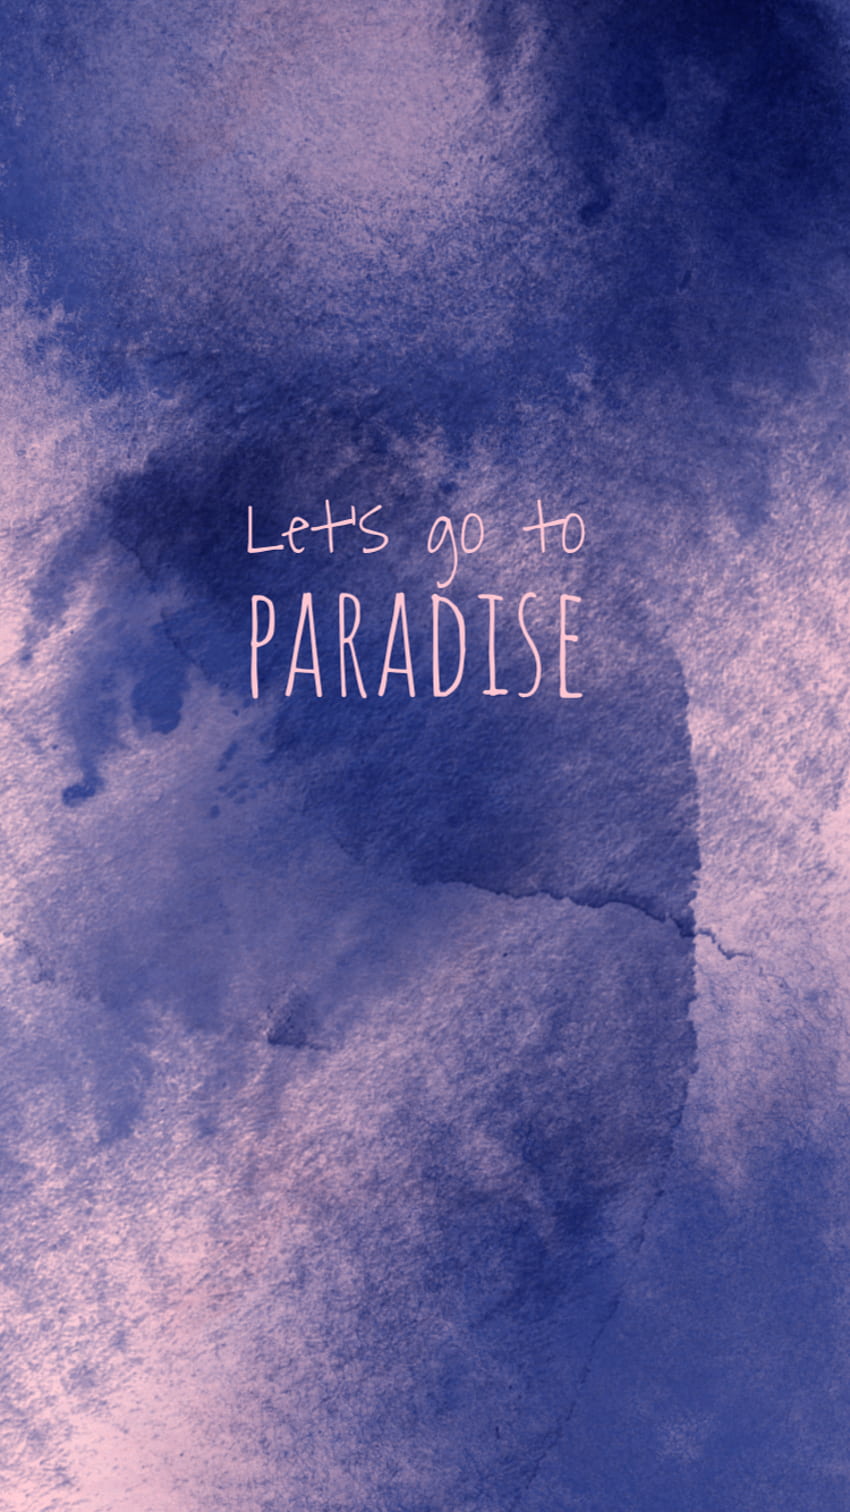 Paradise - Bazzi (Lyrics) 